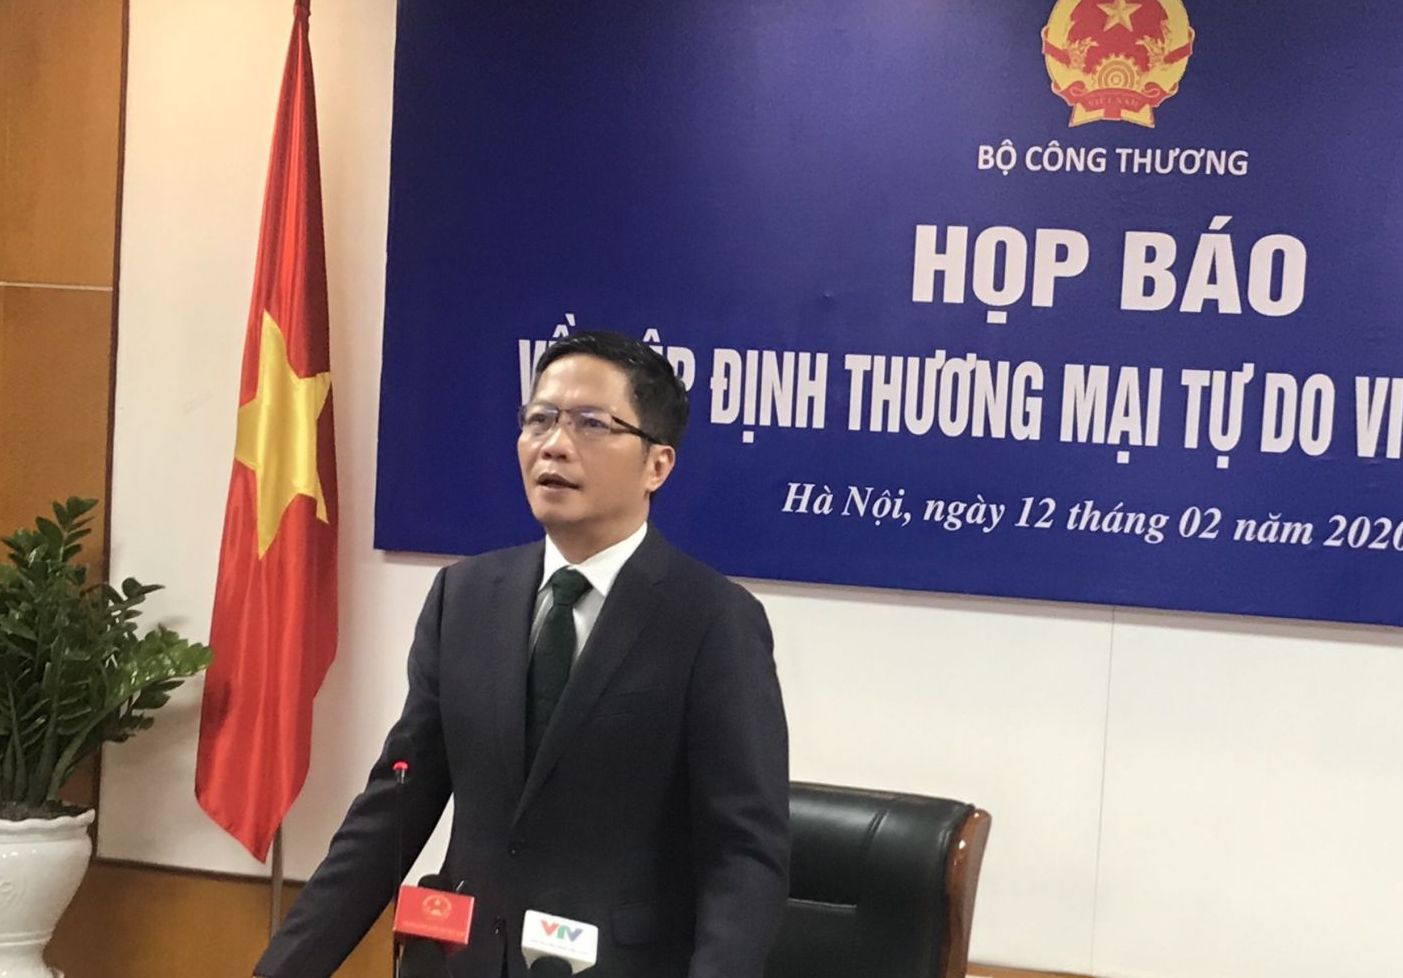 Bộ trưởng Trần Tuấn Anh: EVFTA được phê chuẩn, lần đầu tiên Việt Nam trở thành nước đi đầu trong hội nhập